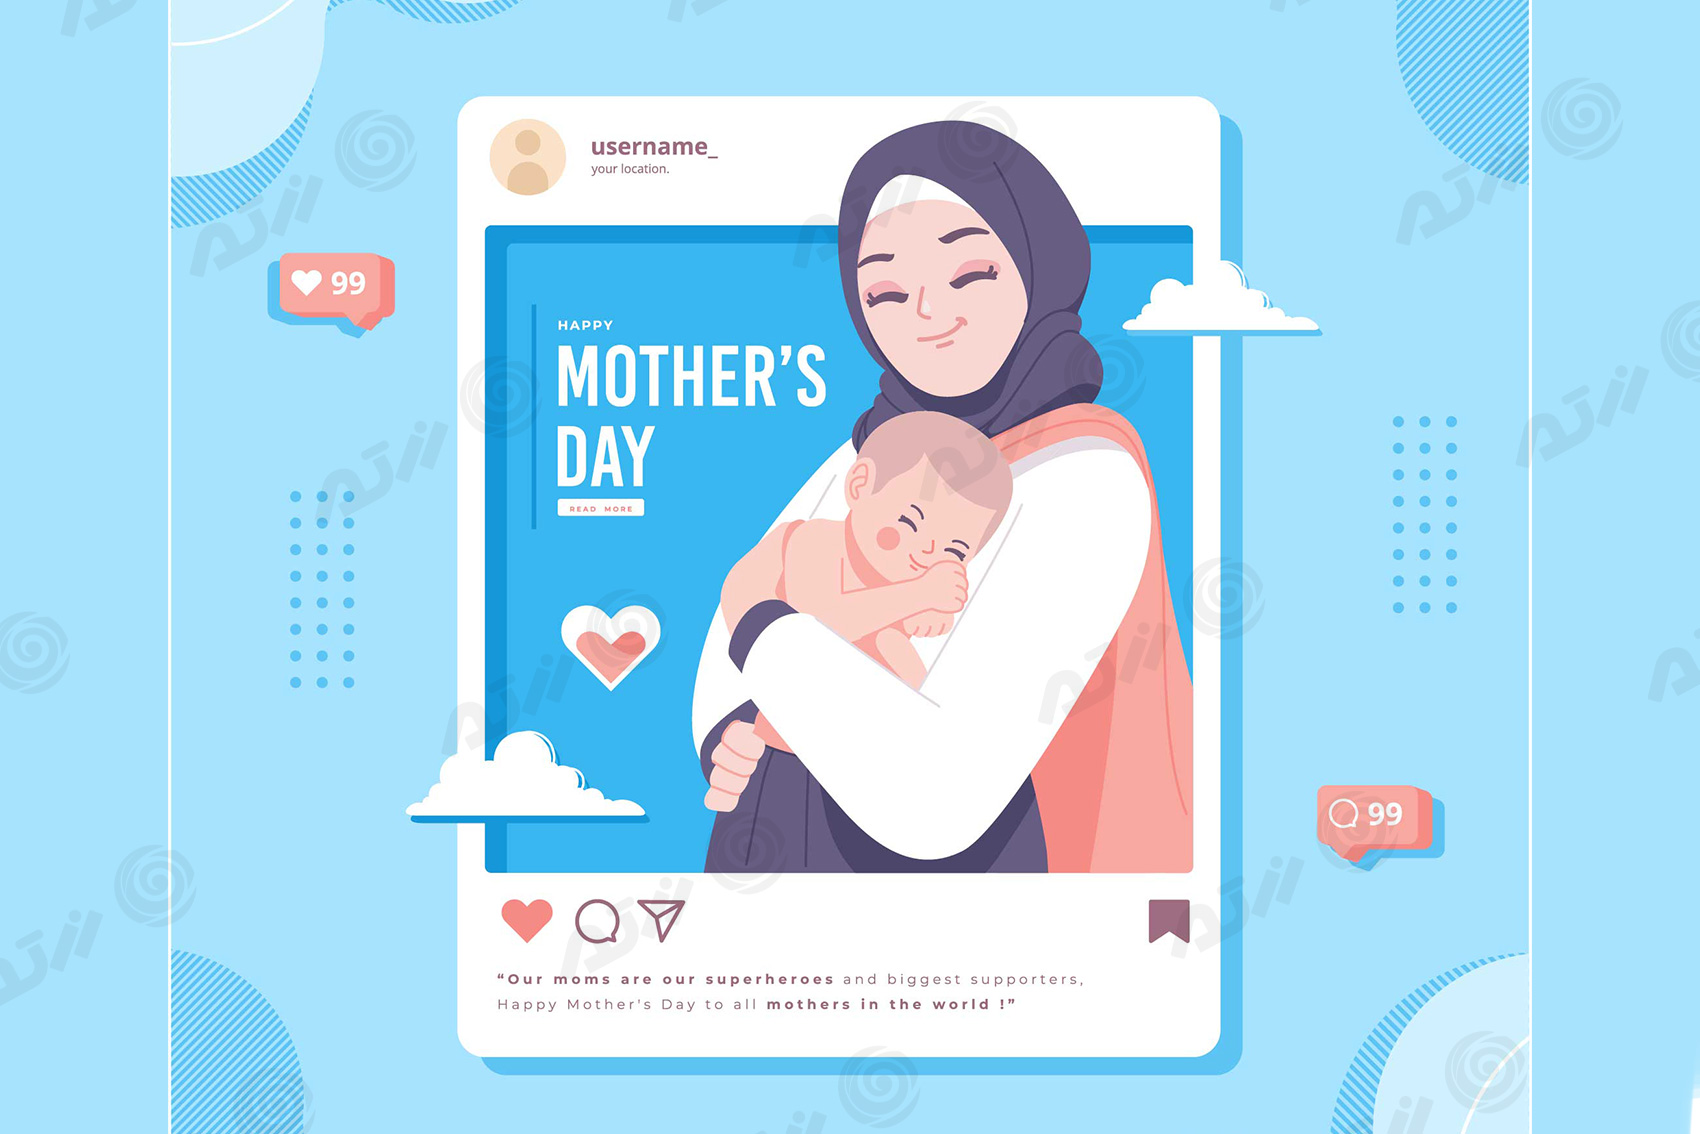 وکتور EPS مادر با حجاب اسلامی درحال در آغوش گرفتن نوزاد در قالب شبکه های اجتماعی ویژه روز مادر